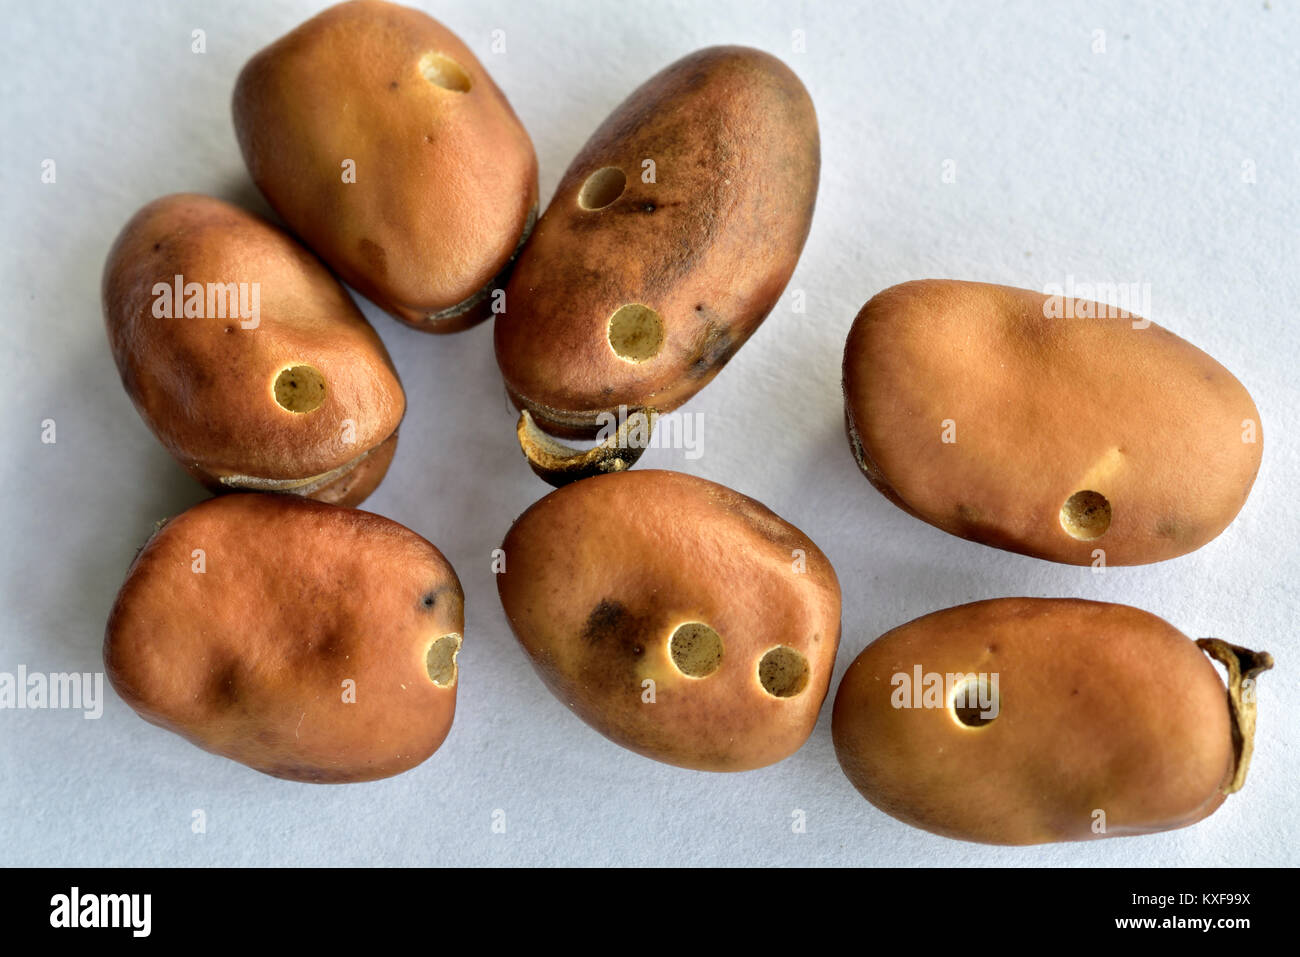 Le fave secche sbucciate o fava, un importante alimento, che mostra i fori prodotta dai semi di fagiolo beetle Foto Stock